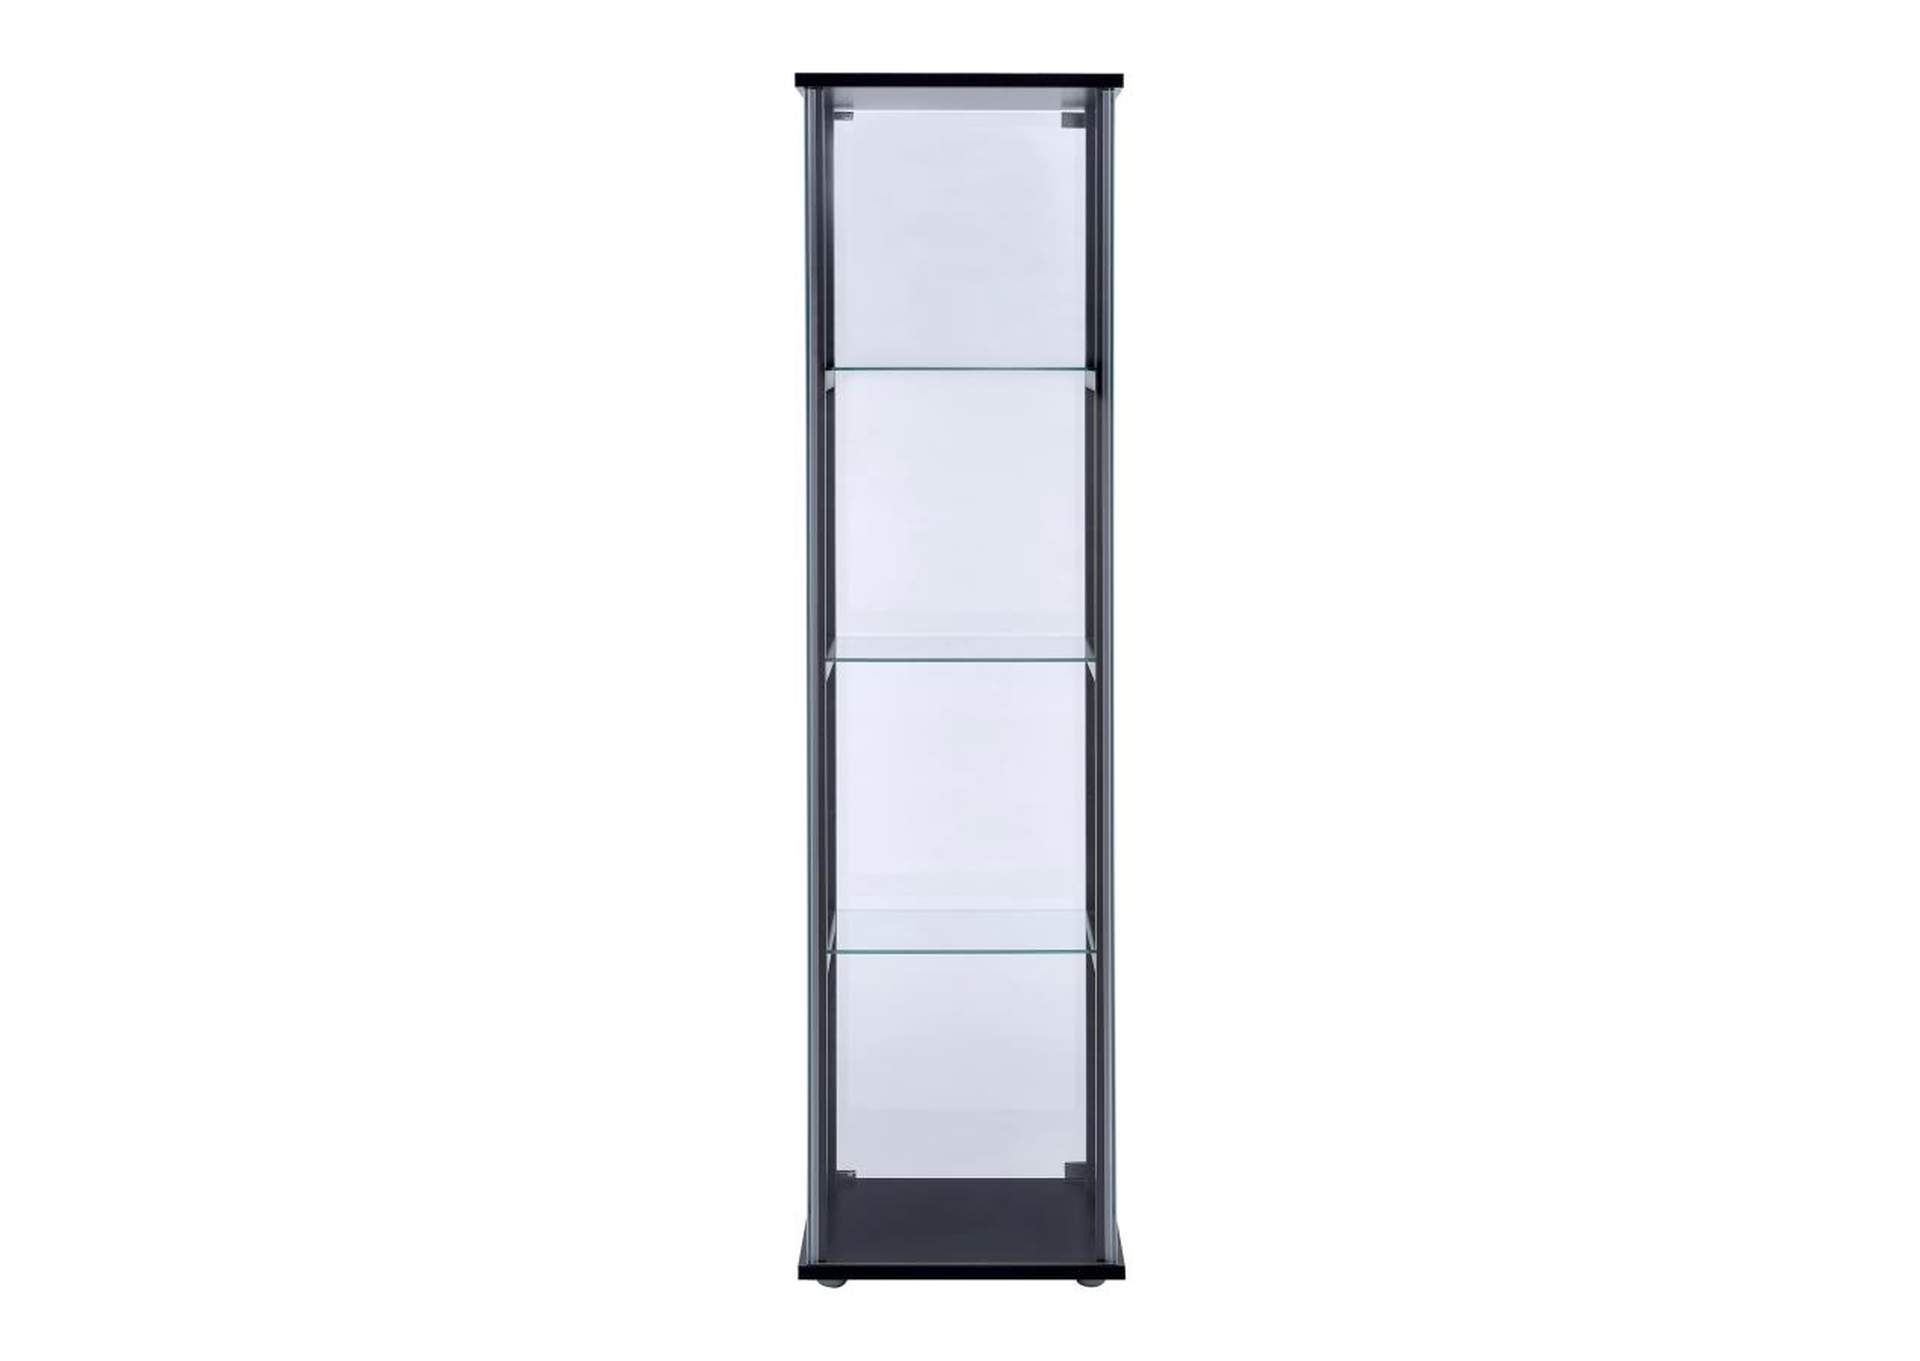 Cyclamen 4-Shelf Glass Curio Cabinet Black And Clear,Coaster Furniture